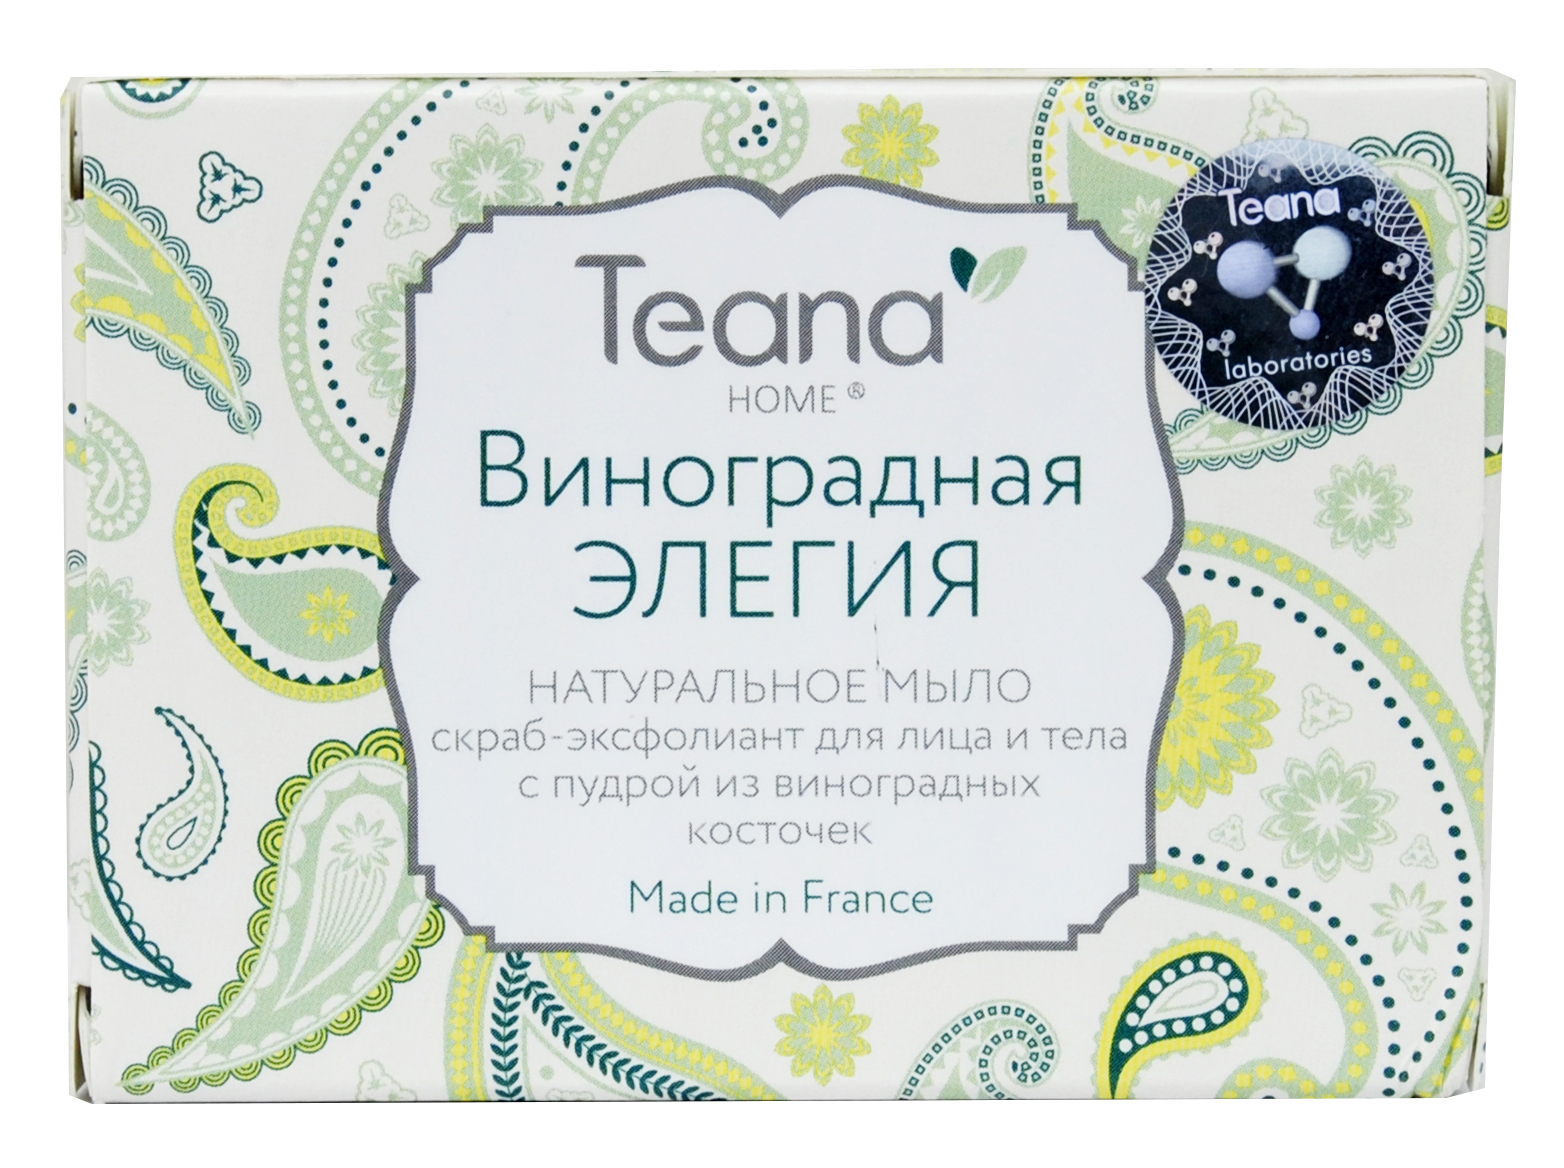 Teana Натуральное мыло скраб-эксфолиант для лица и тела Виноградная элегия, 100 г (Teana, Натуральное мыло ручной работы)